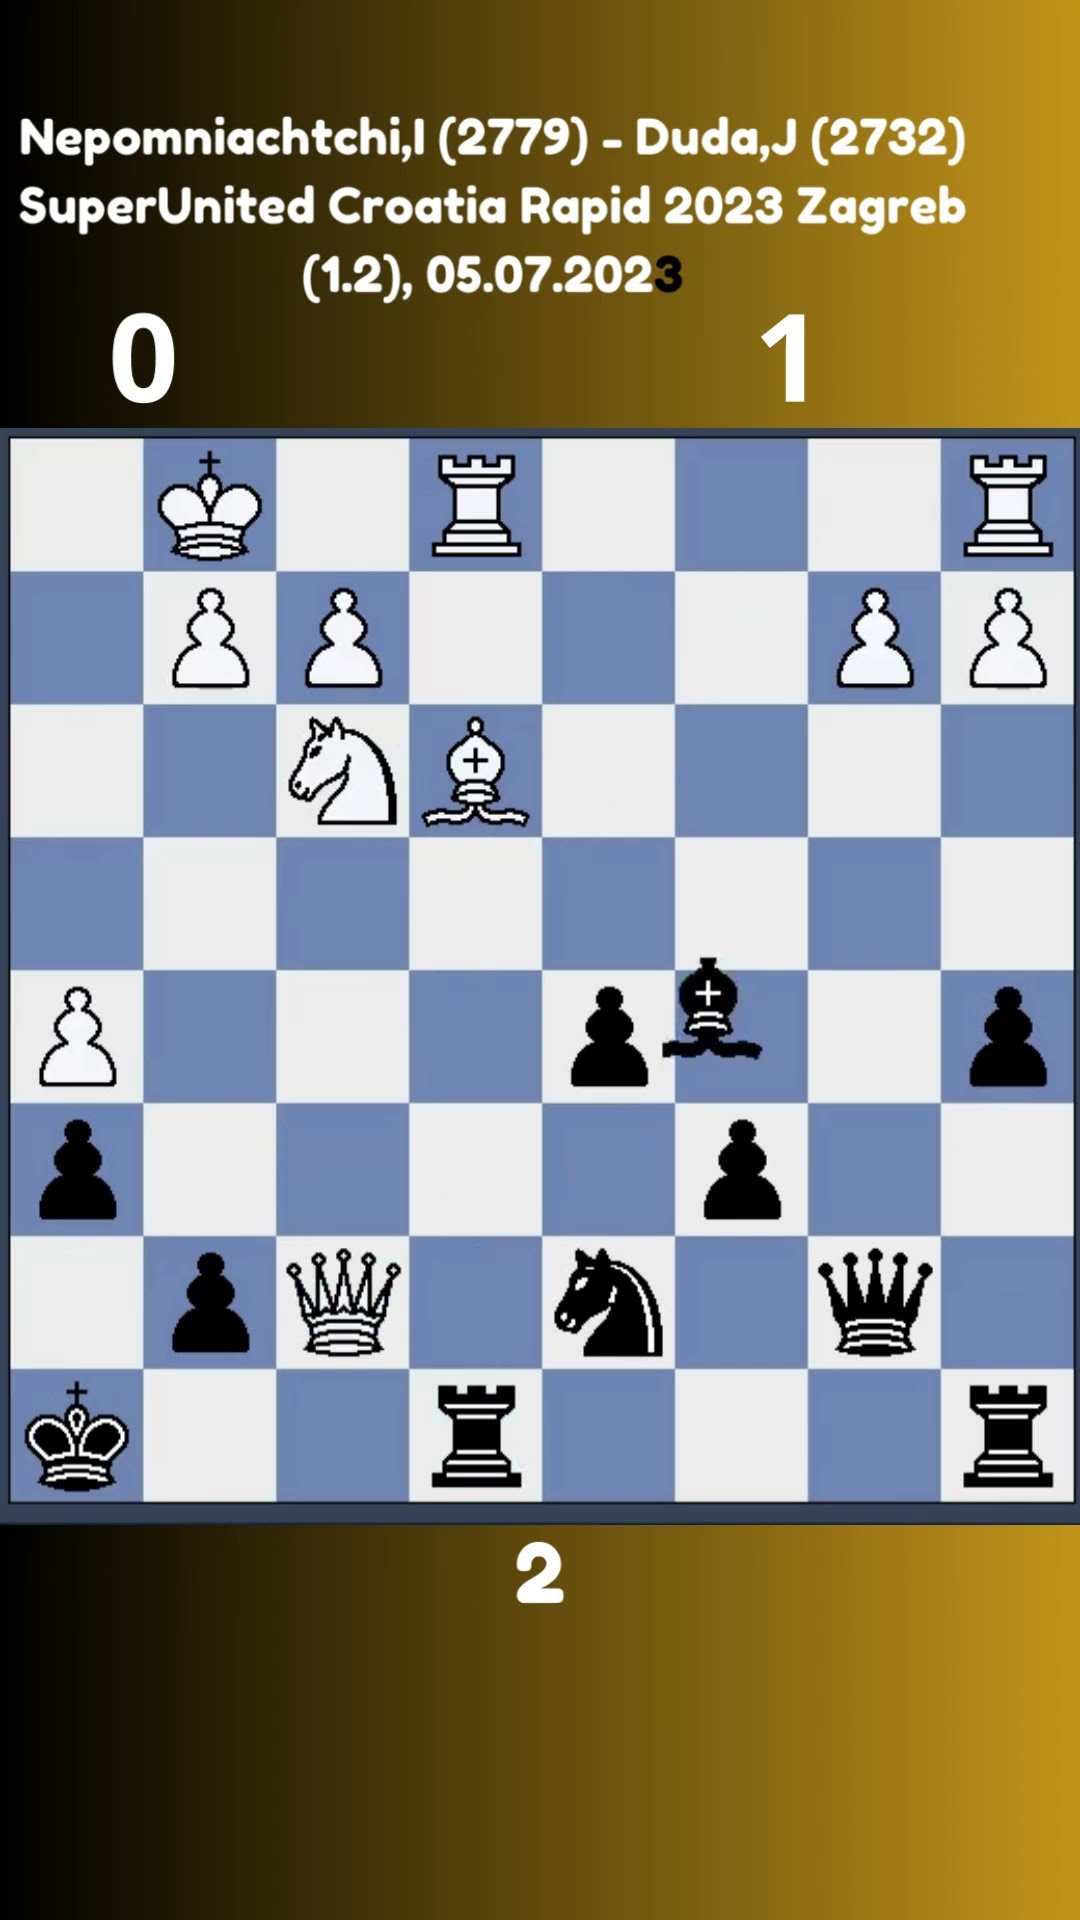 clases de ajedrez online 2021 